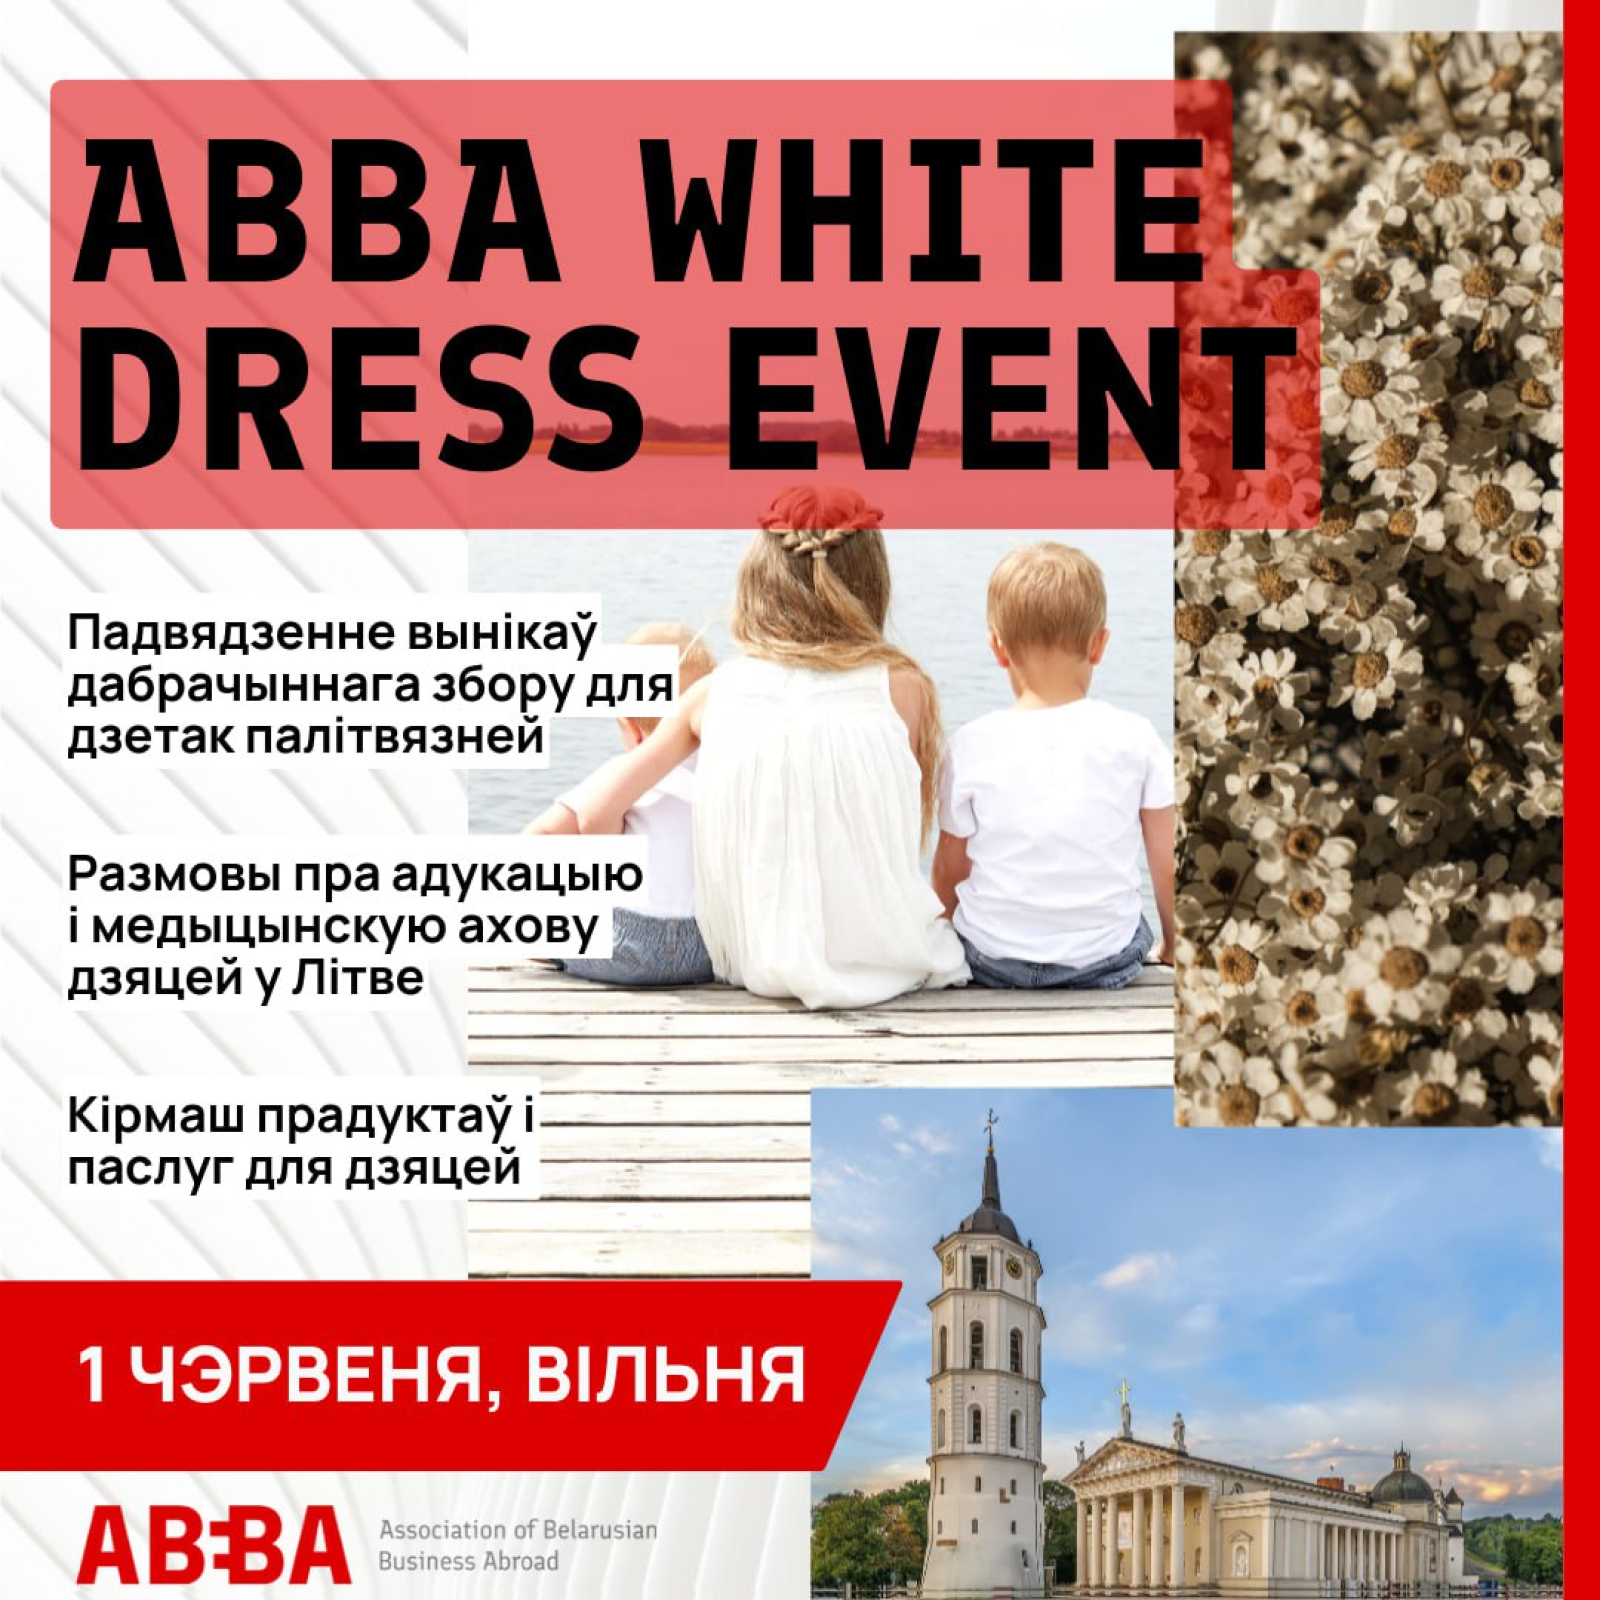 Присоединяйтесь к мероприятию ABBA White Dress Event!